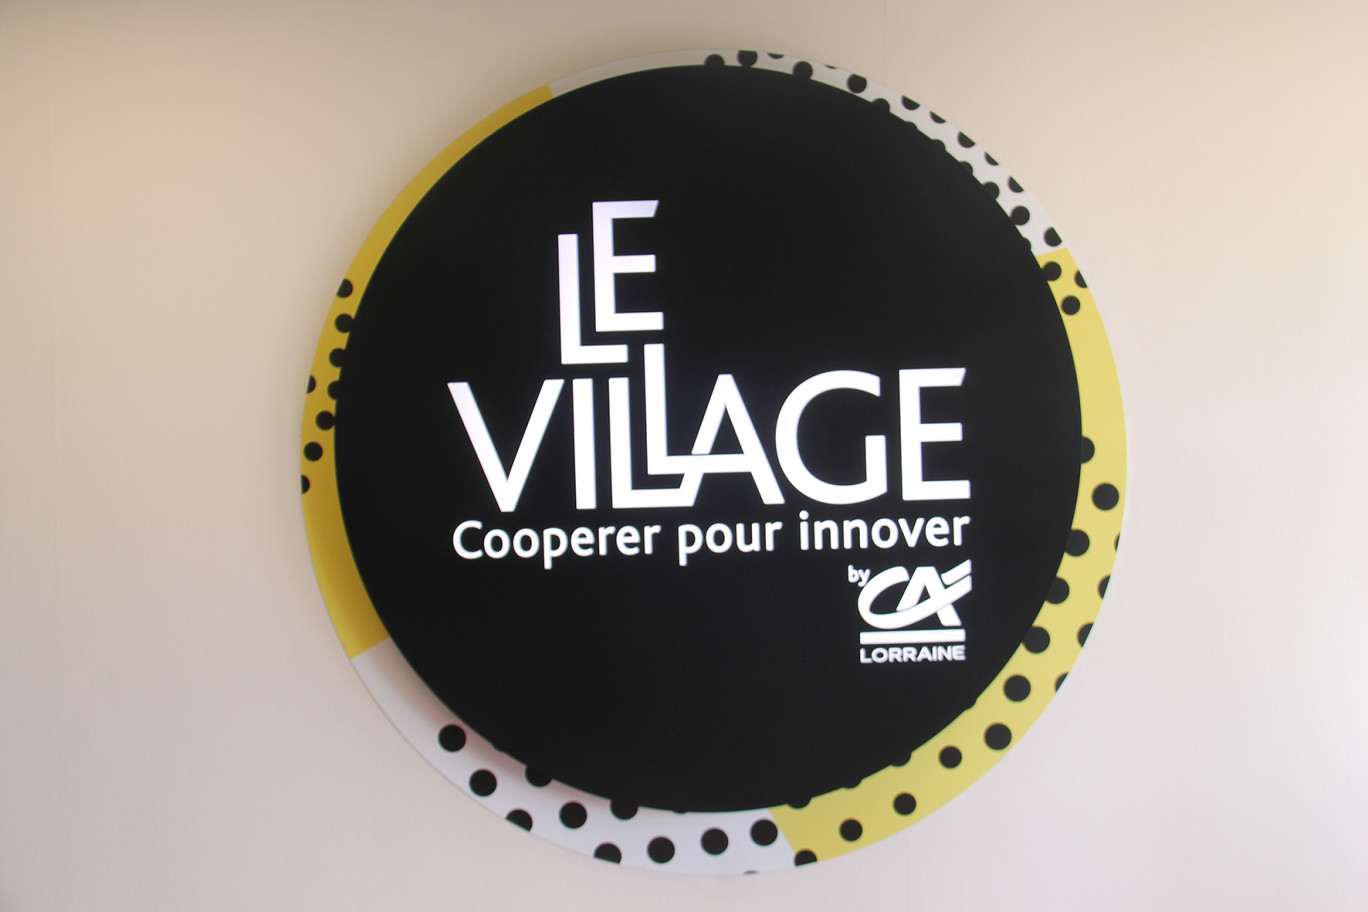 Village by CA Lorraine : quatre nouveaux projets intégrés